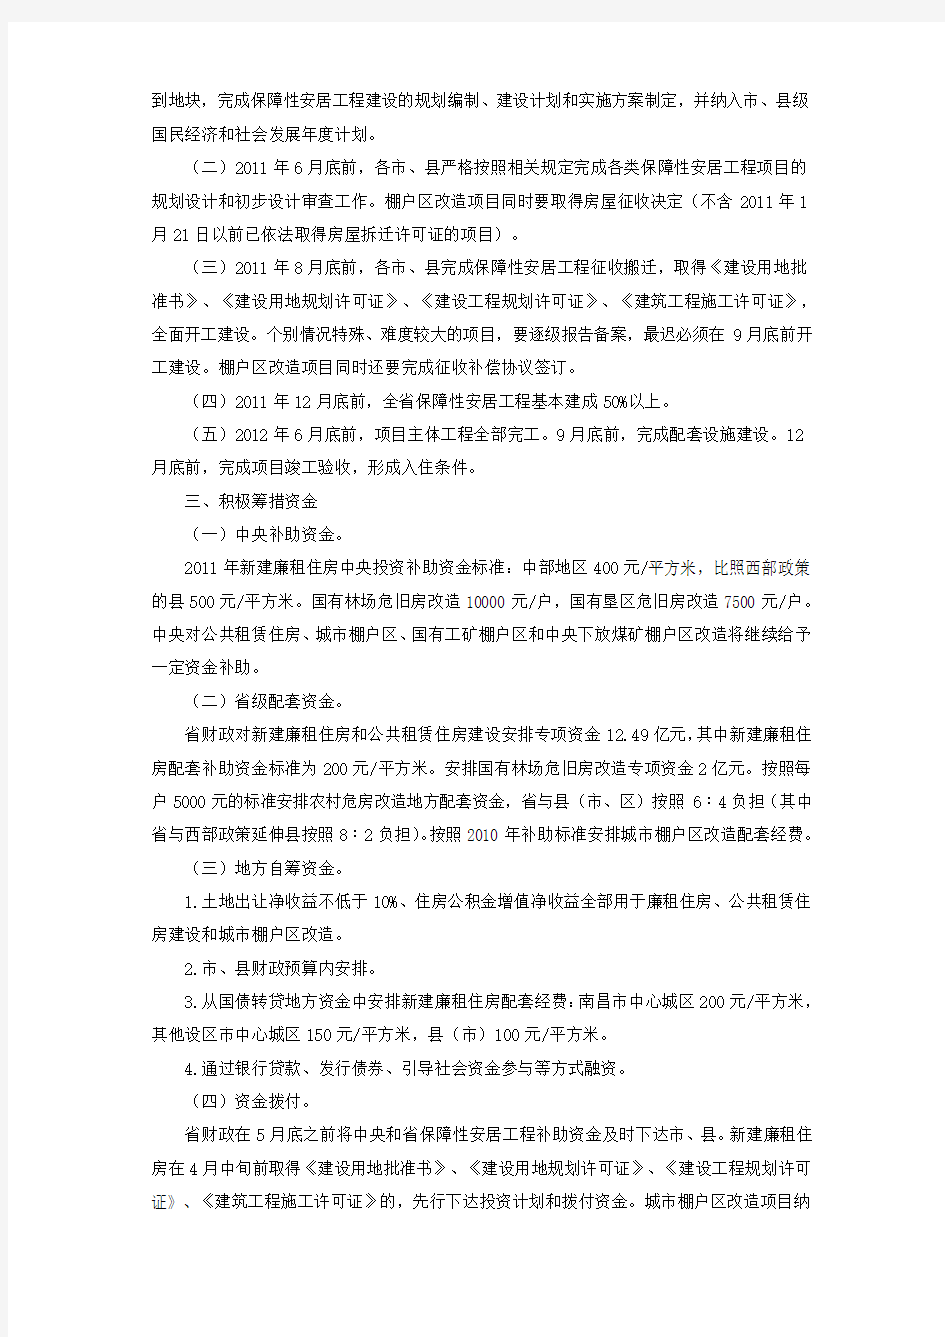 江西省人民政府办公厅关于印发江西省2011年保障性安居工程建设工作方案的通知